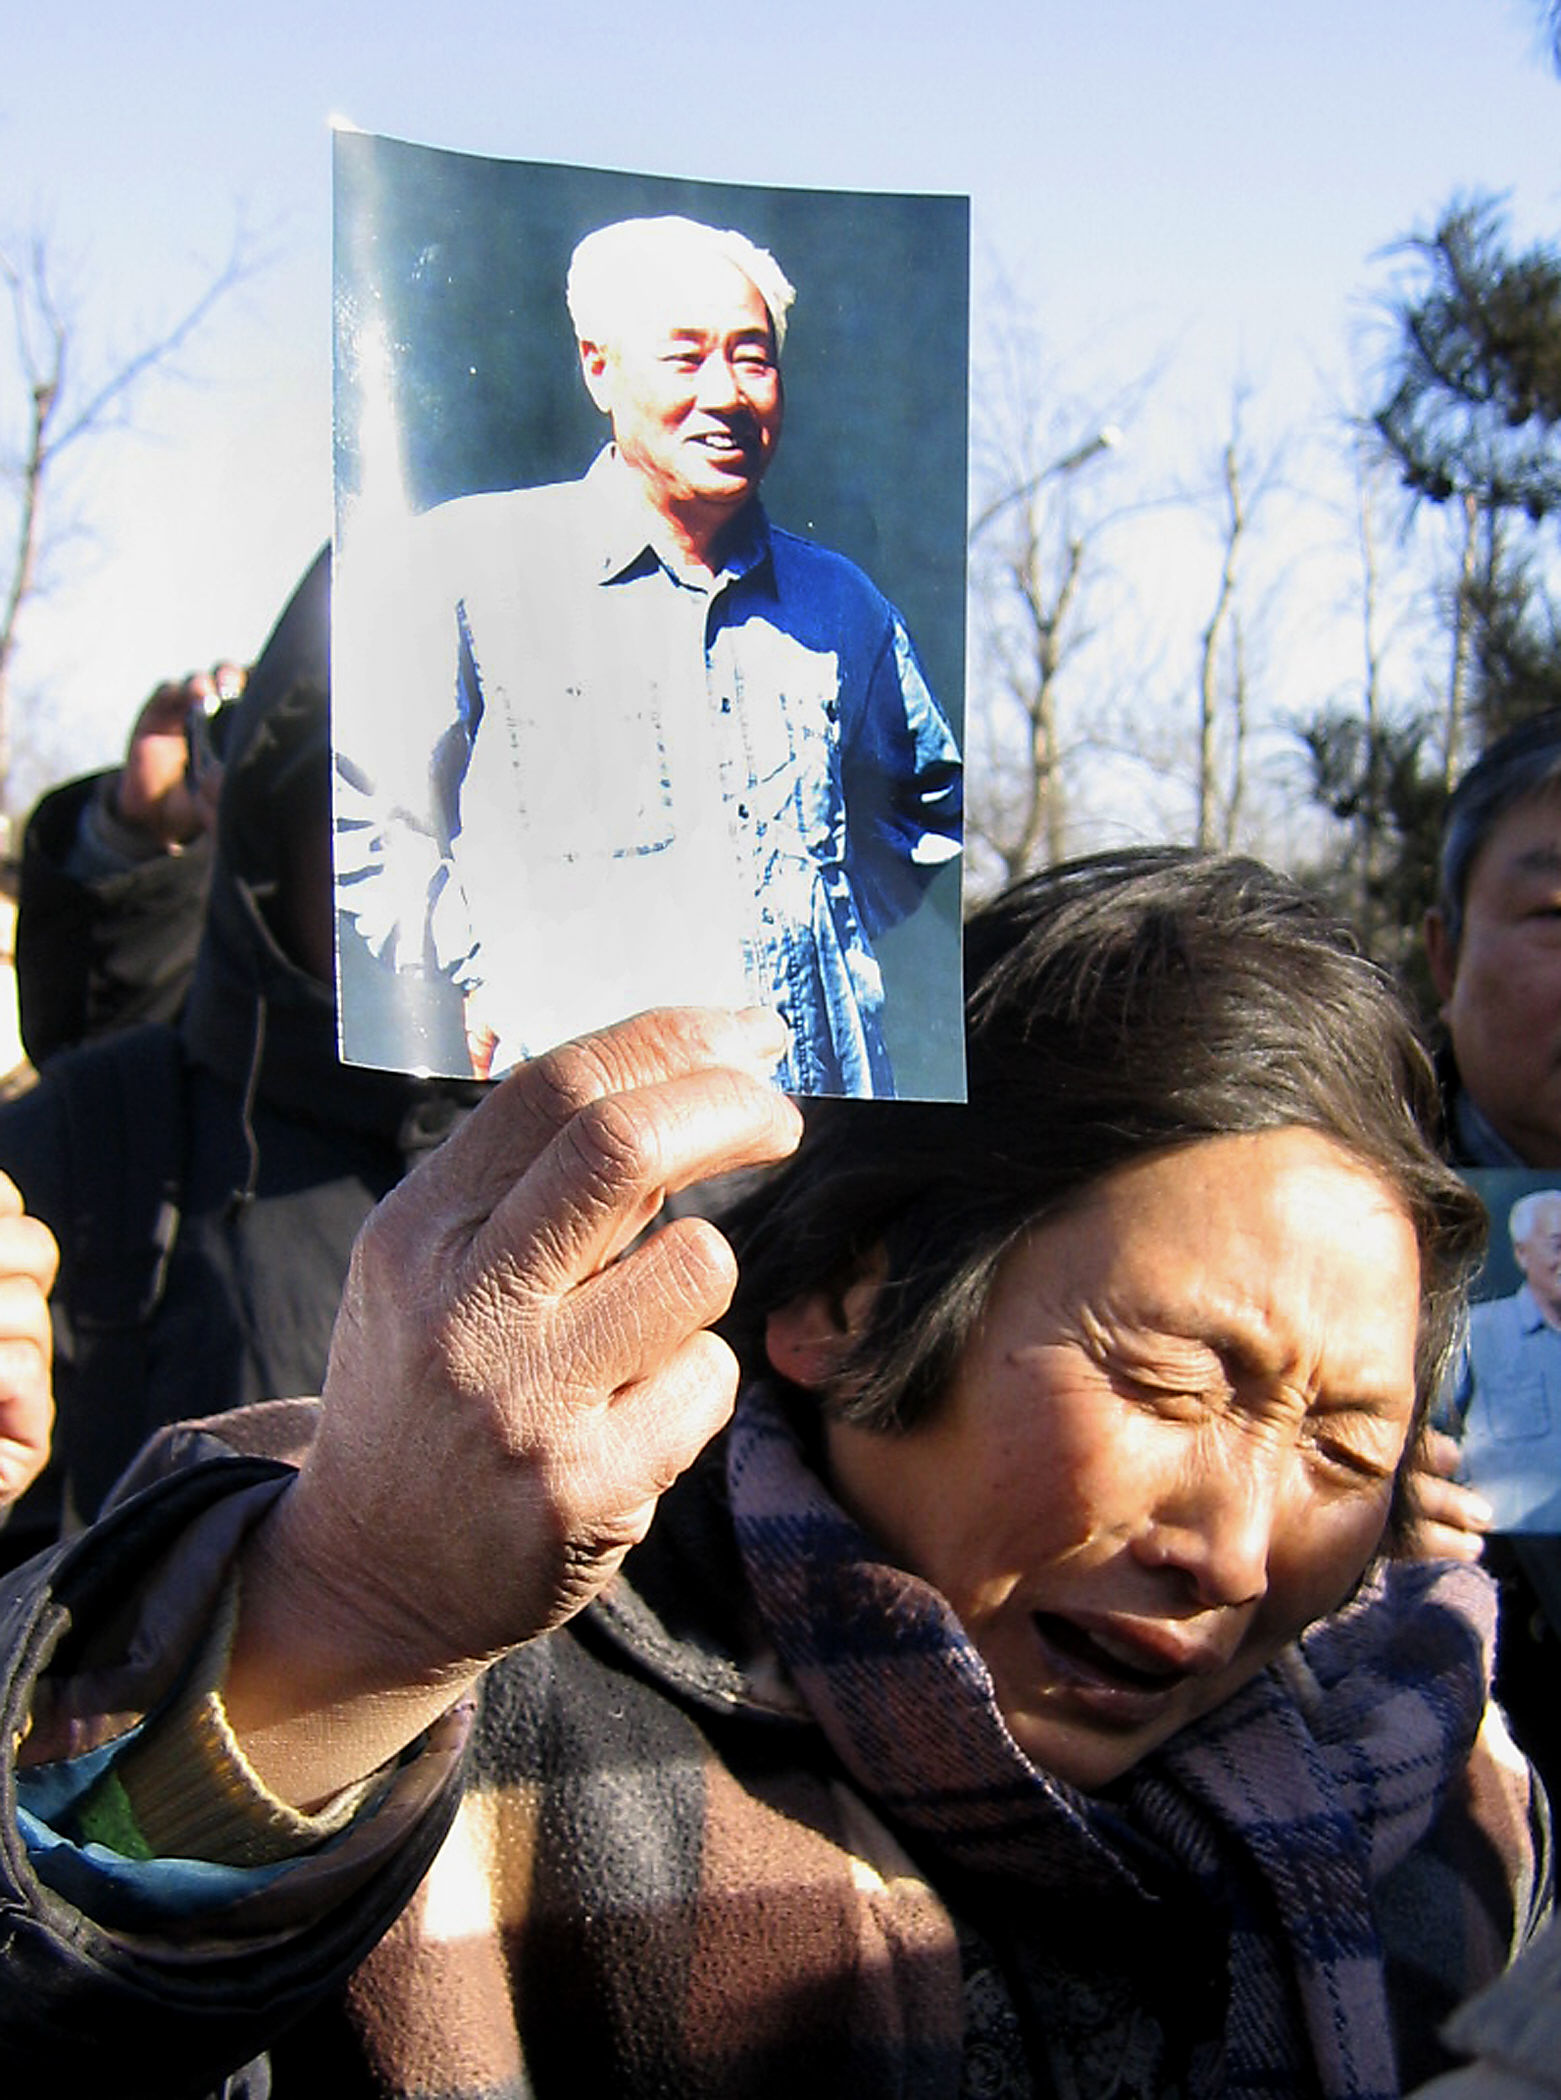 Megemlékezés rendőr kordon mögött Pekingben